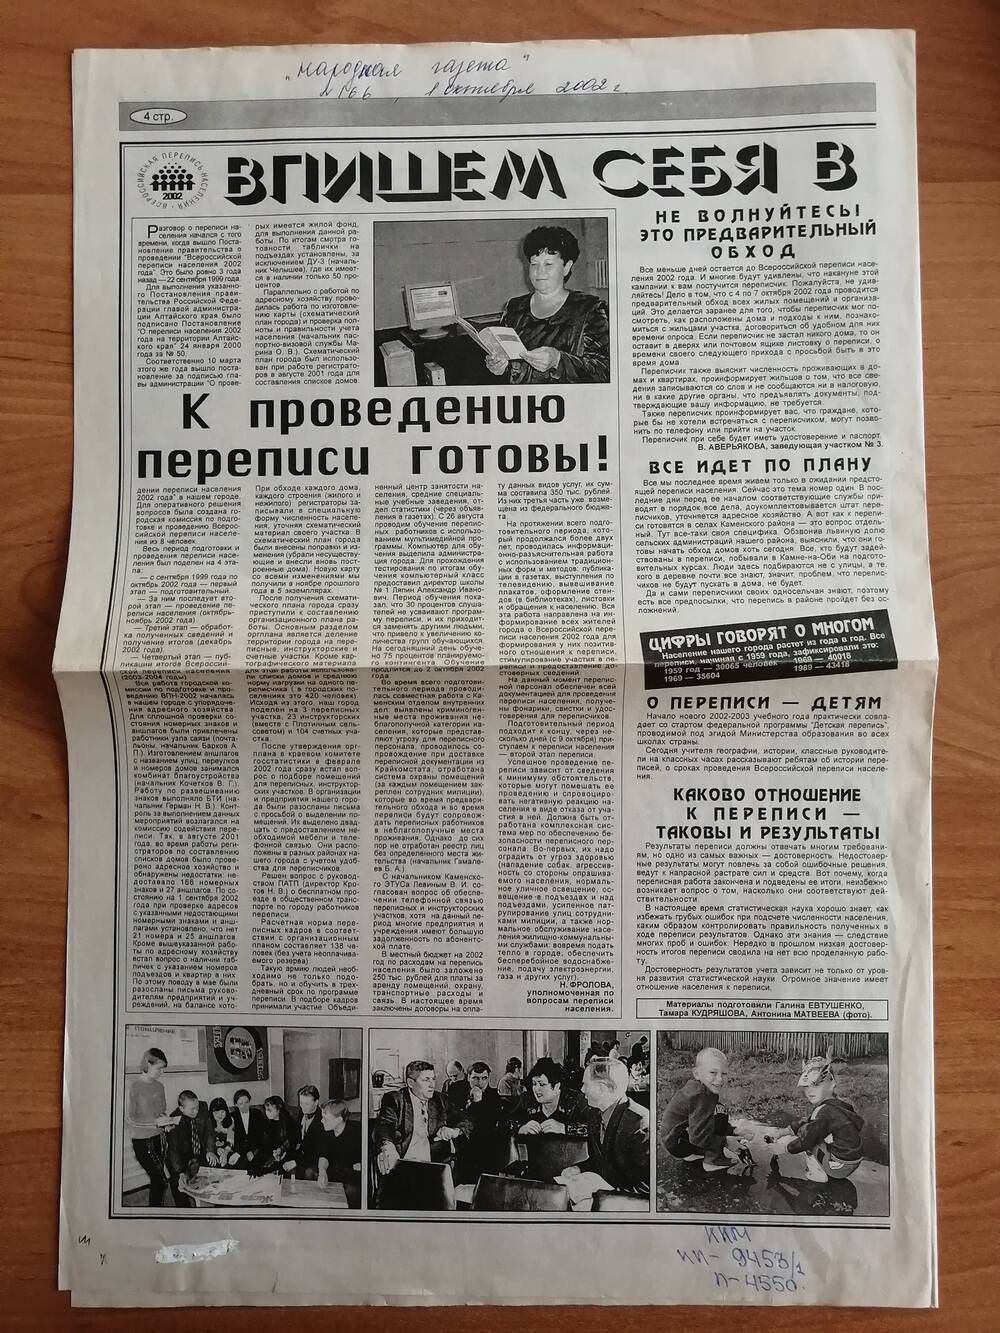 Народная газета №166 от 1 октября 2002 г. с материалами, посвященными Всероссийской переписи населения 2002 года.